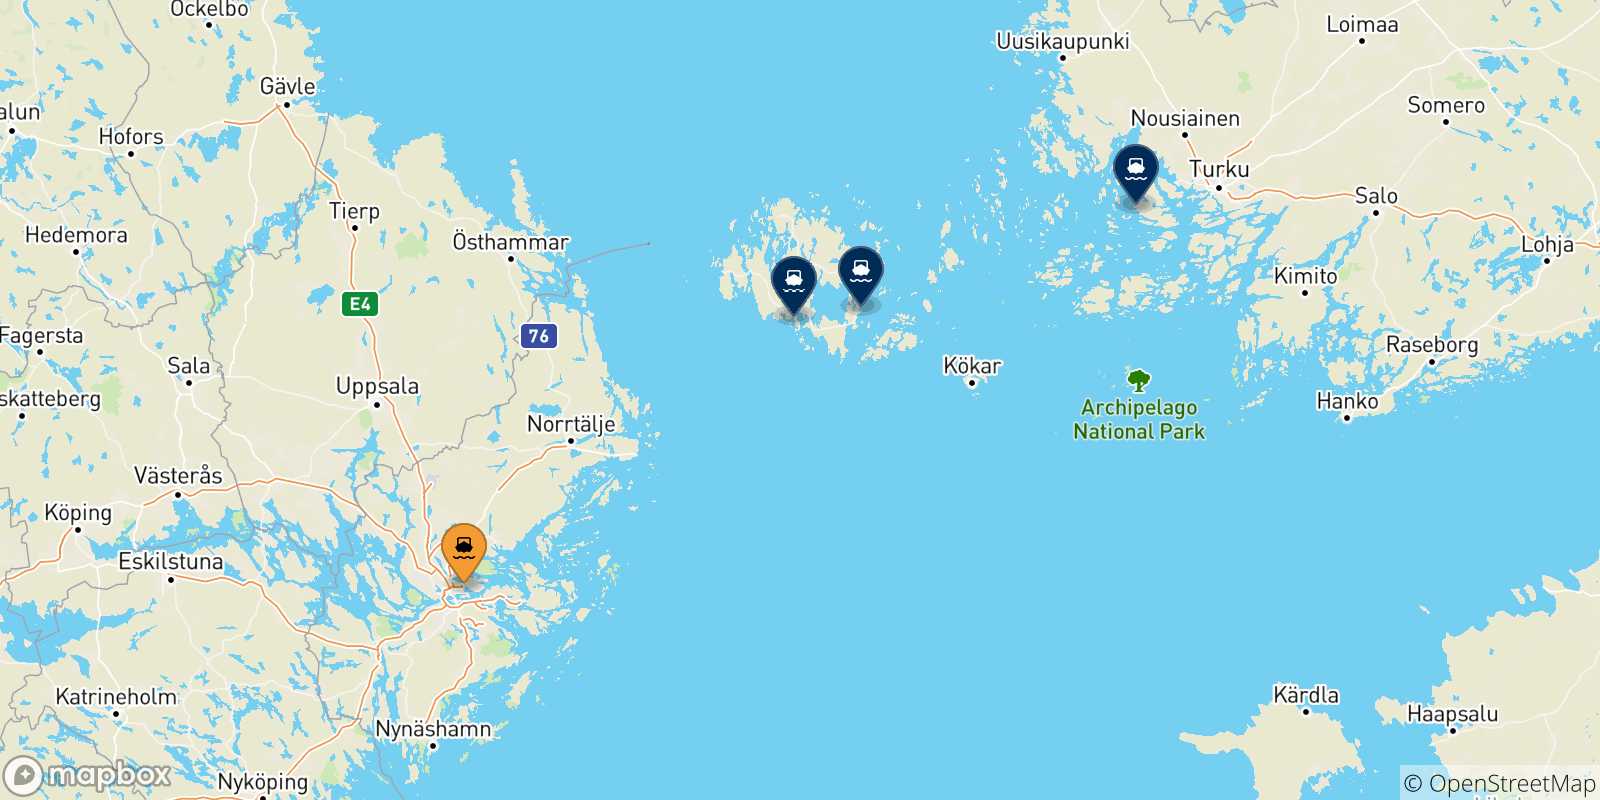 Mappa delle possibili rotte tra Stoccolma e la Finlandia